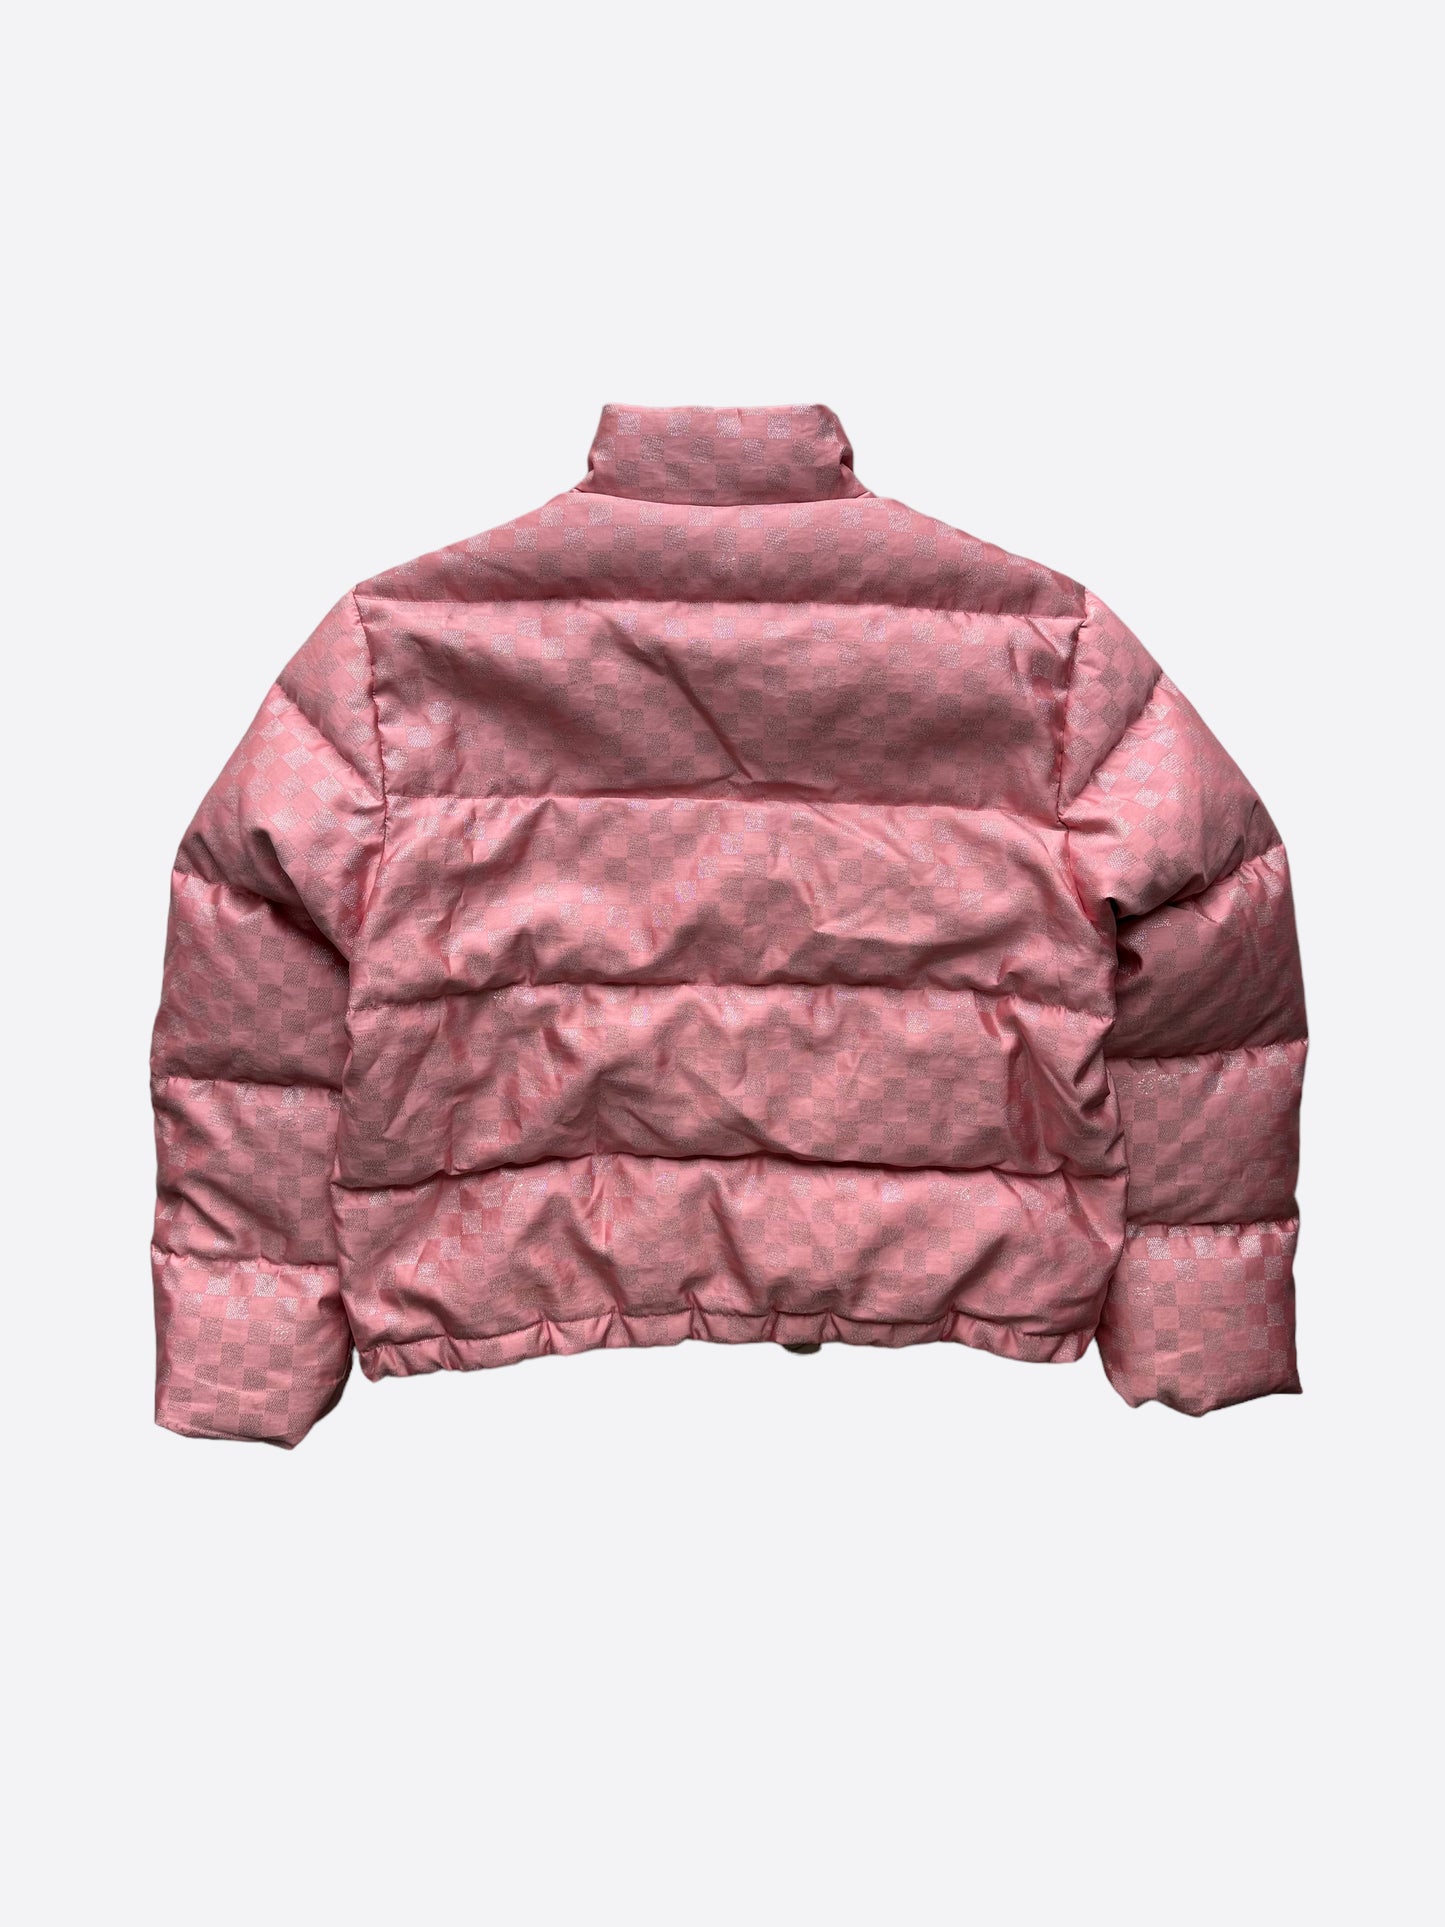 louis vuitton pink jacket